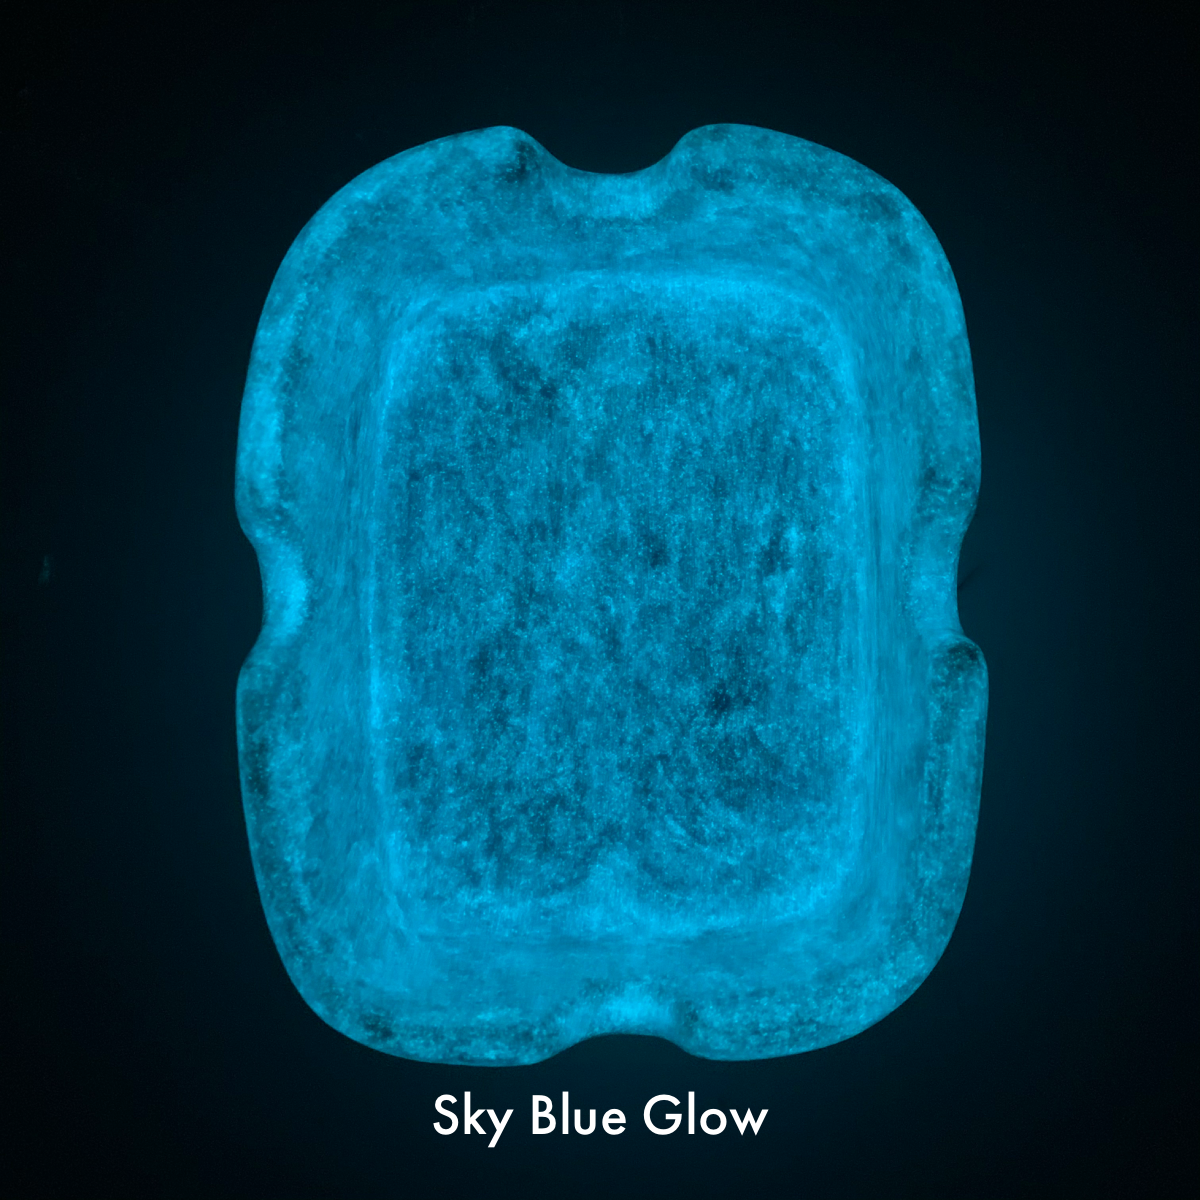 Sky Blue Glow Glaze